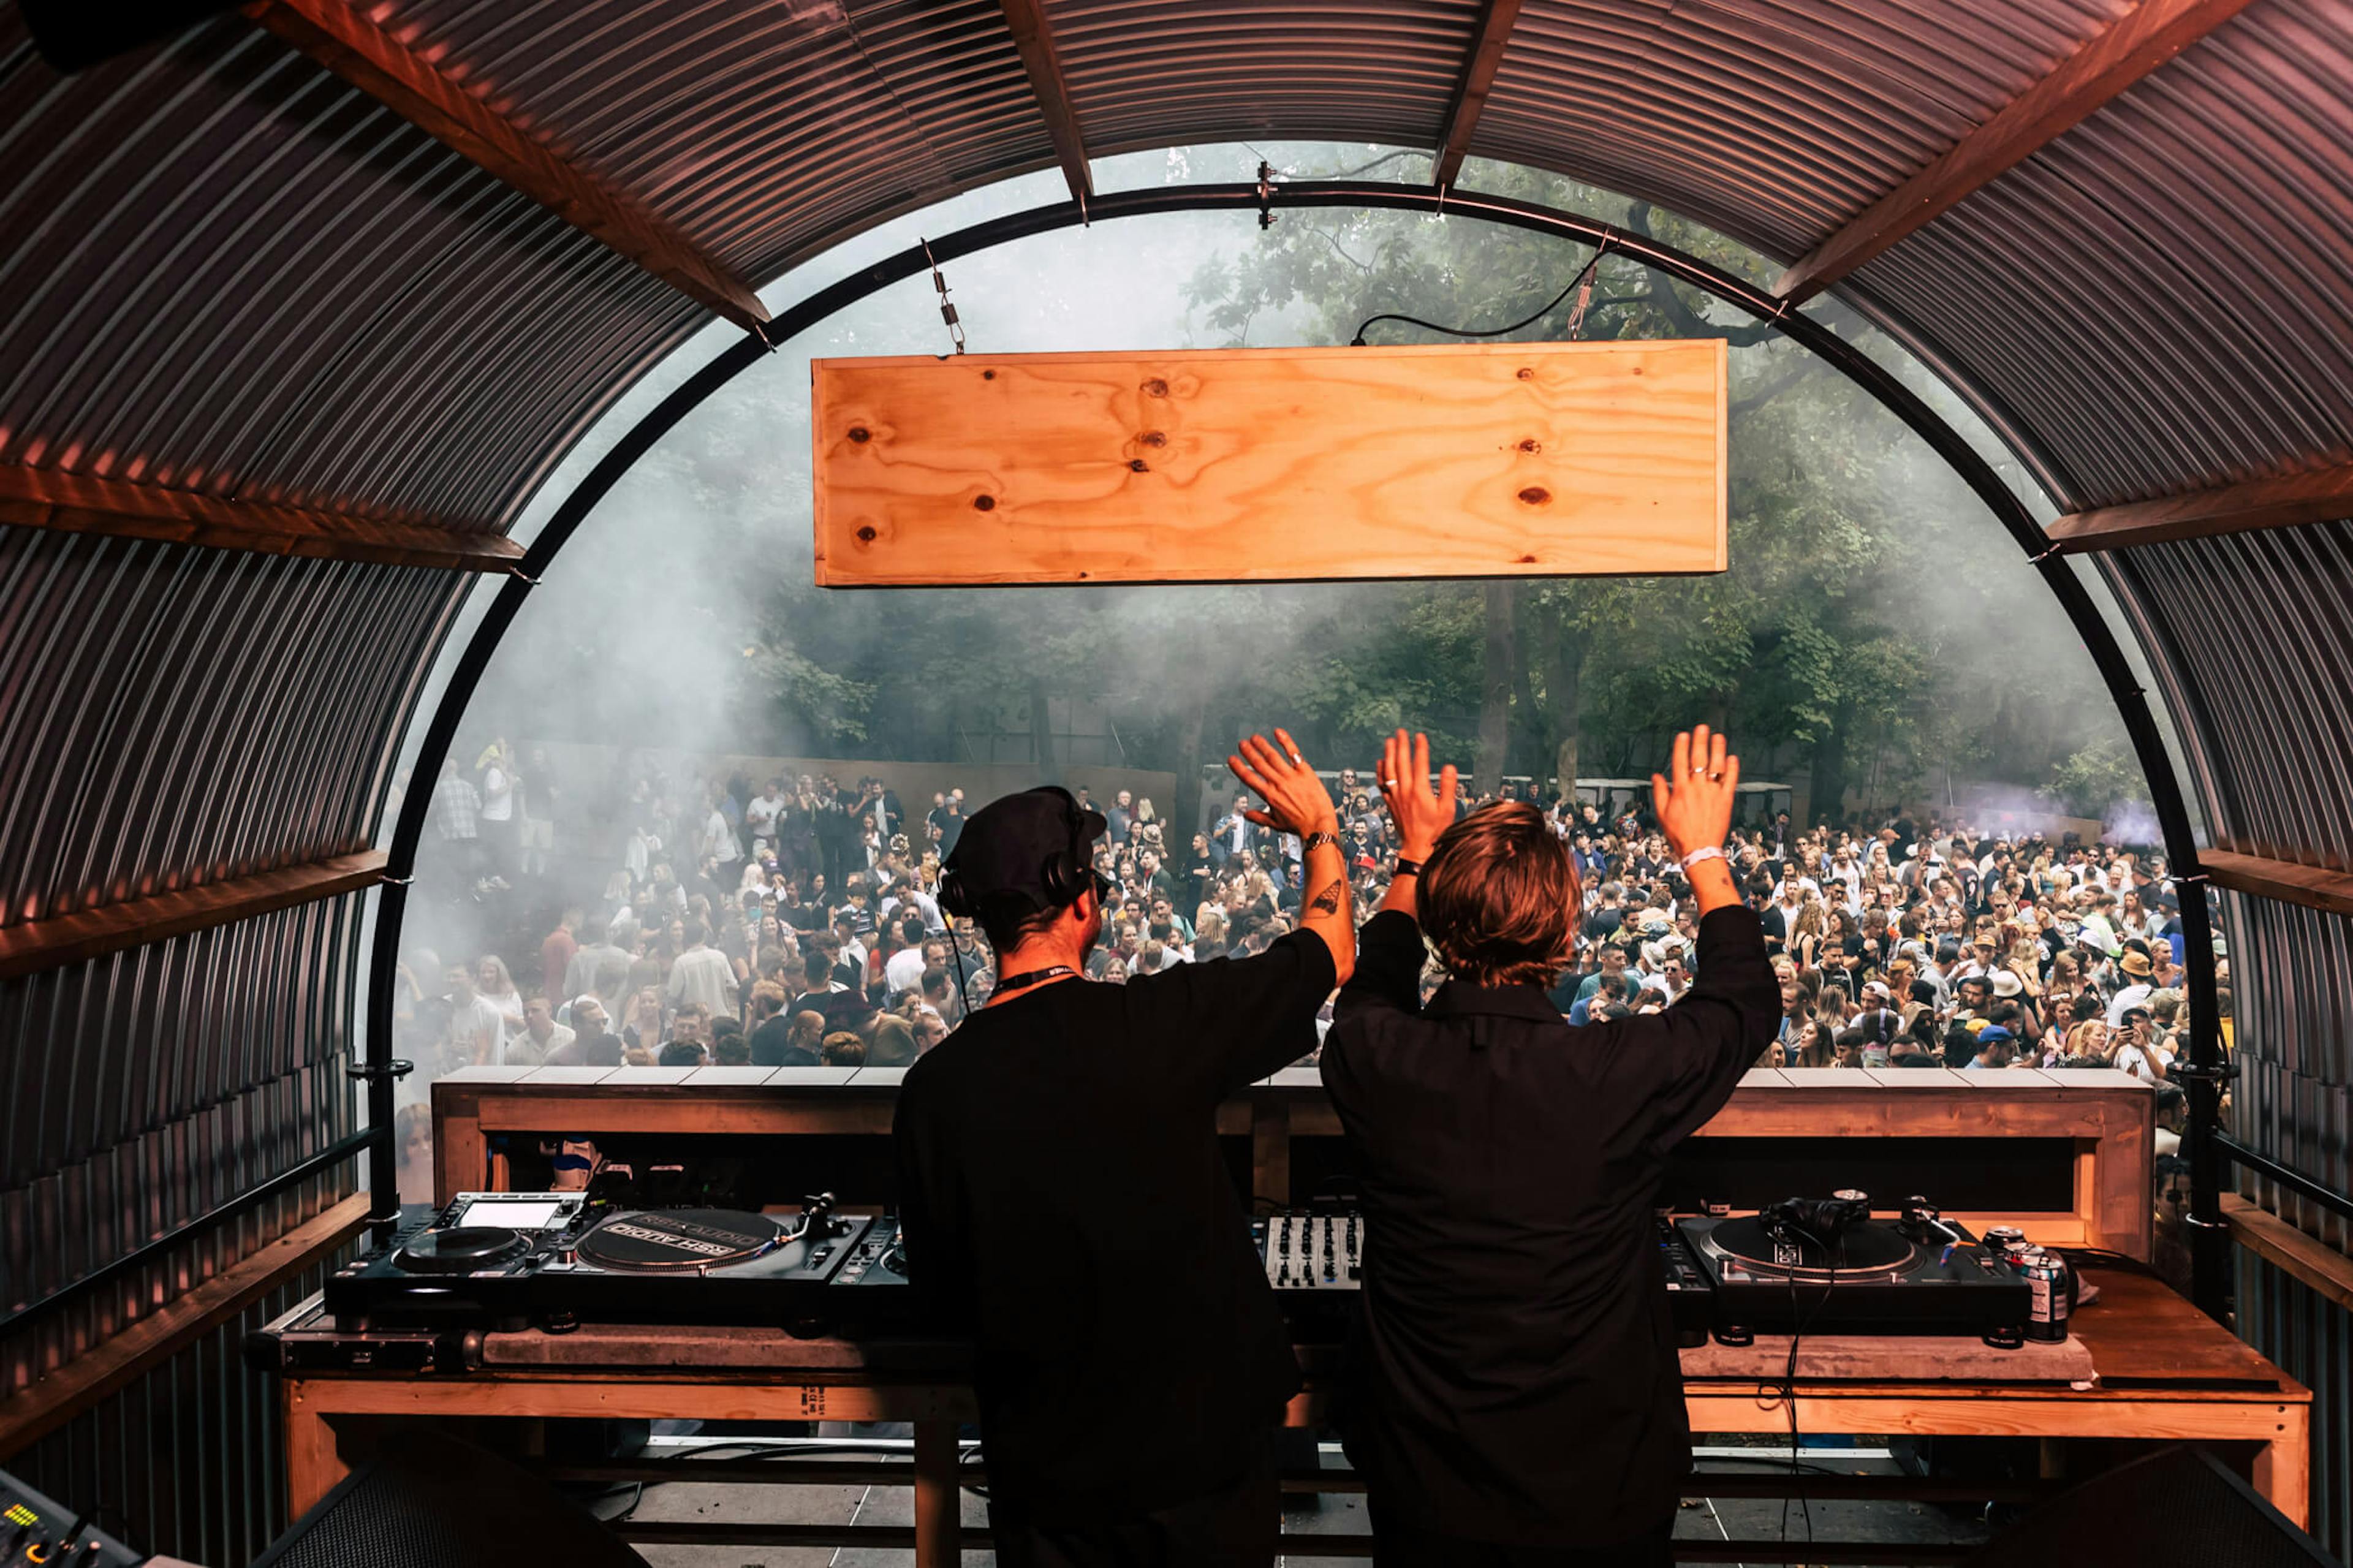 DJs at a festival